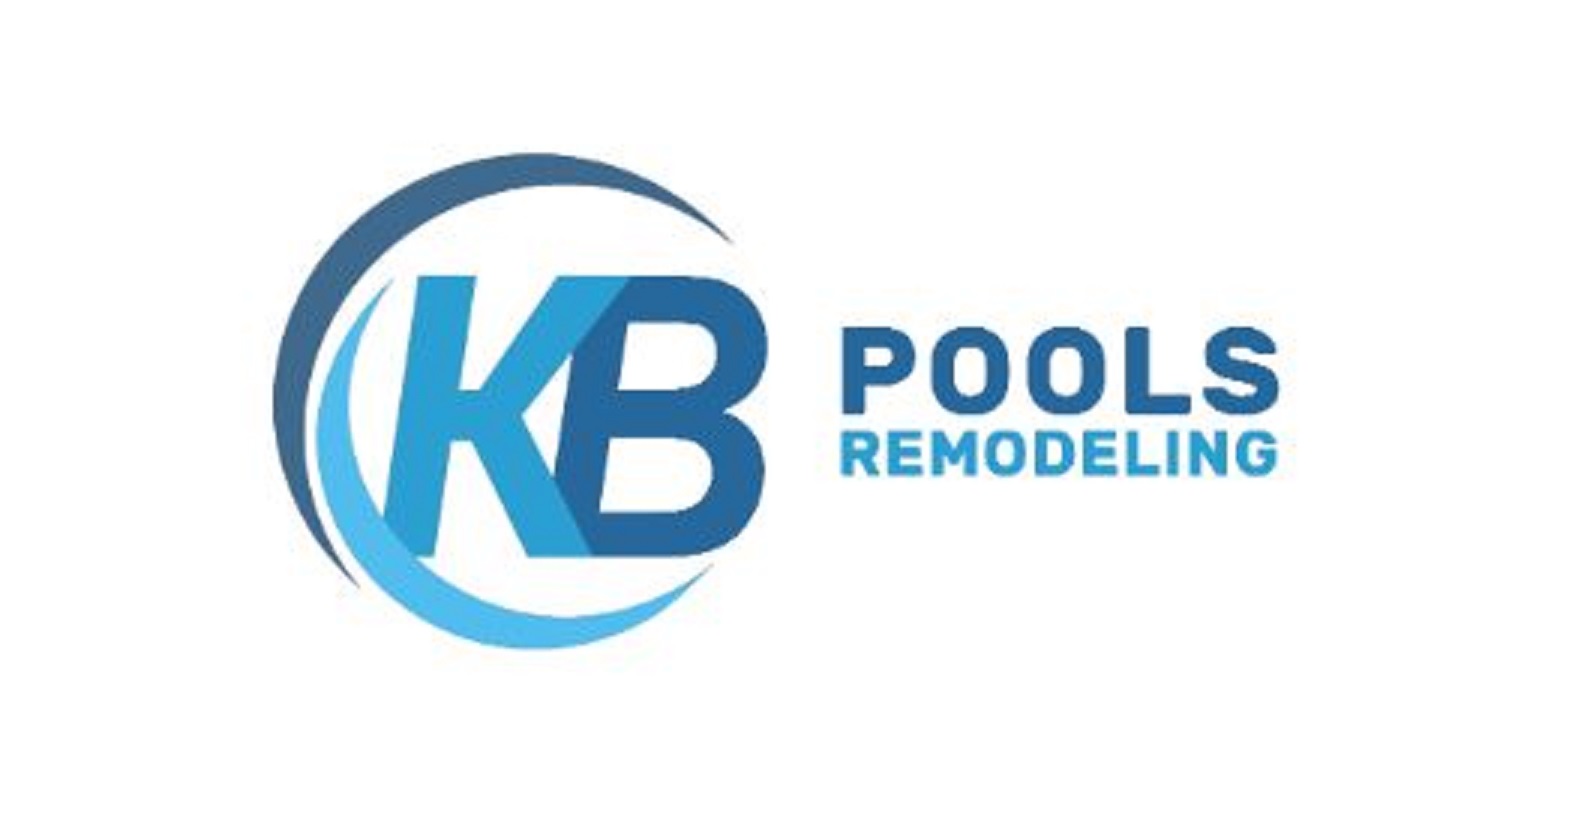 KB Pool Remodeling Logo